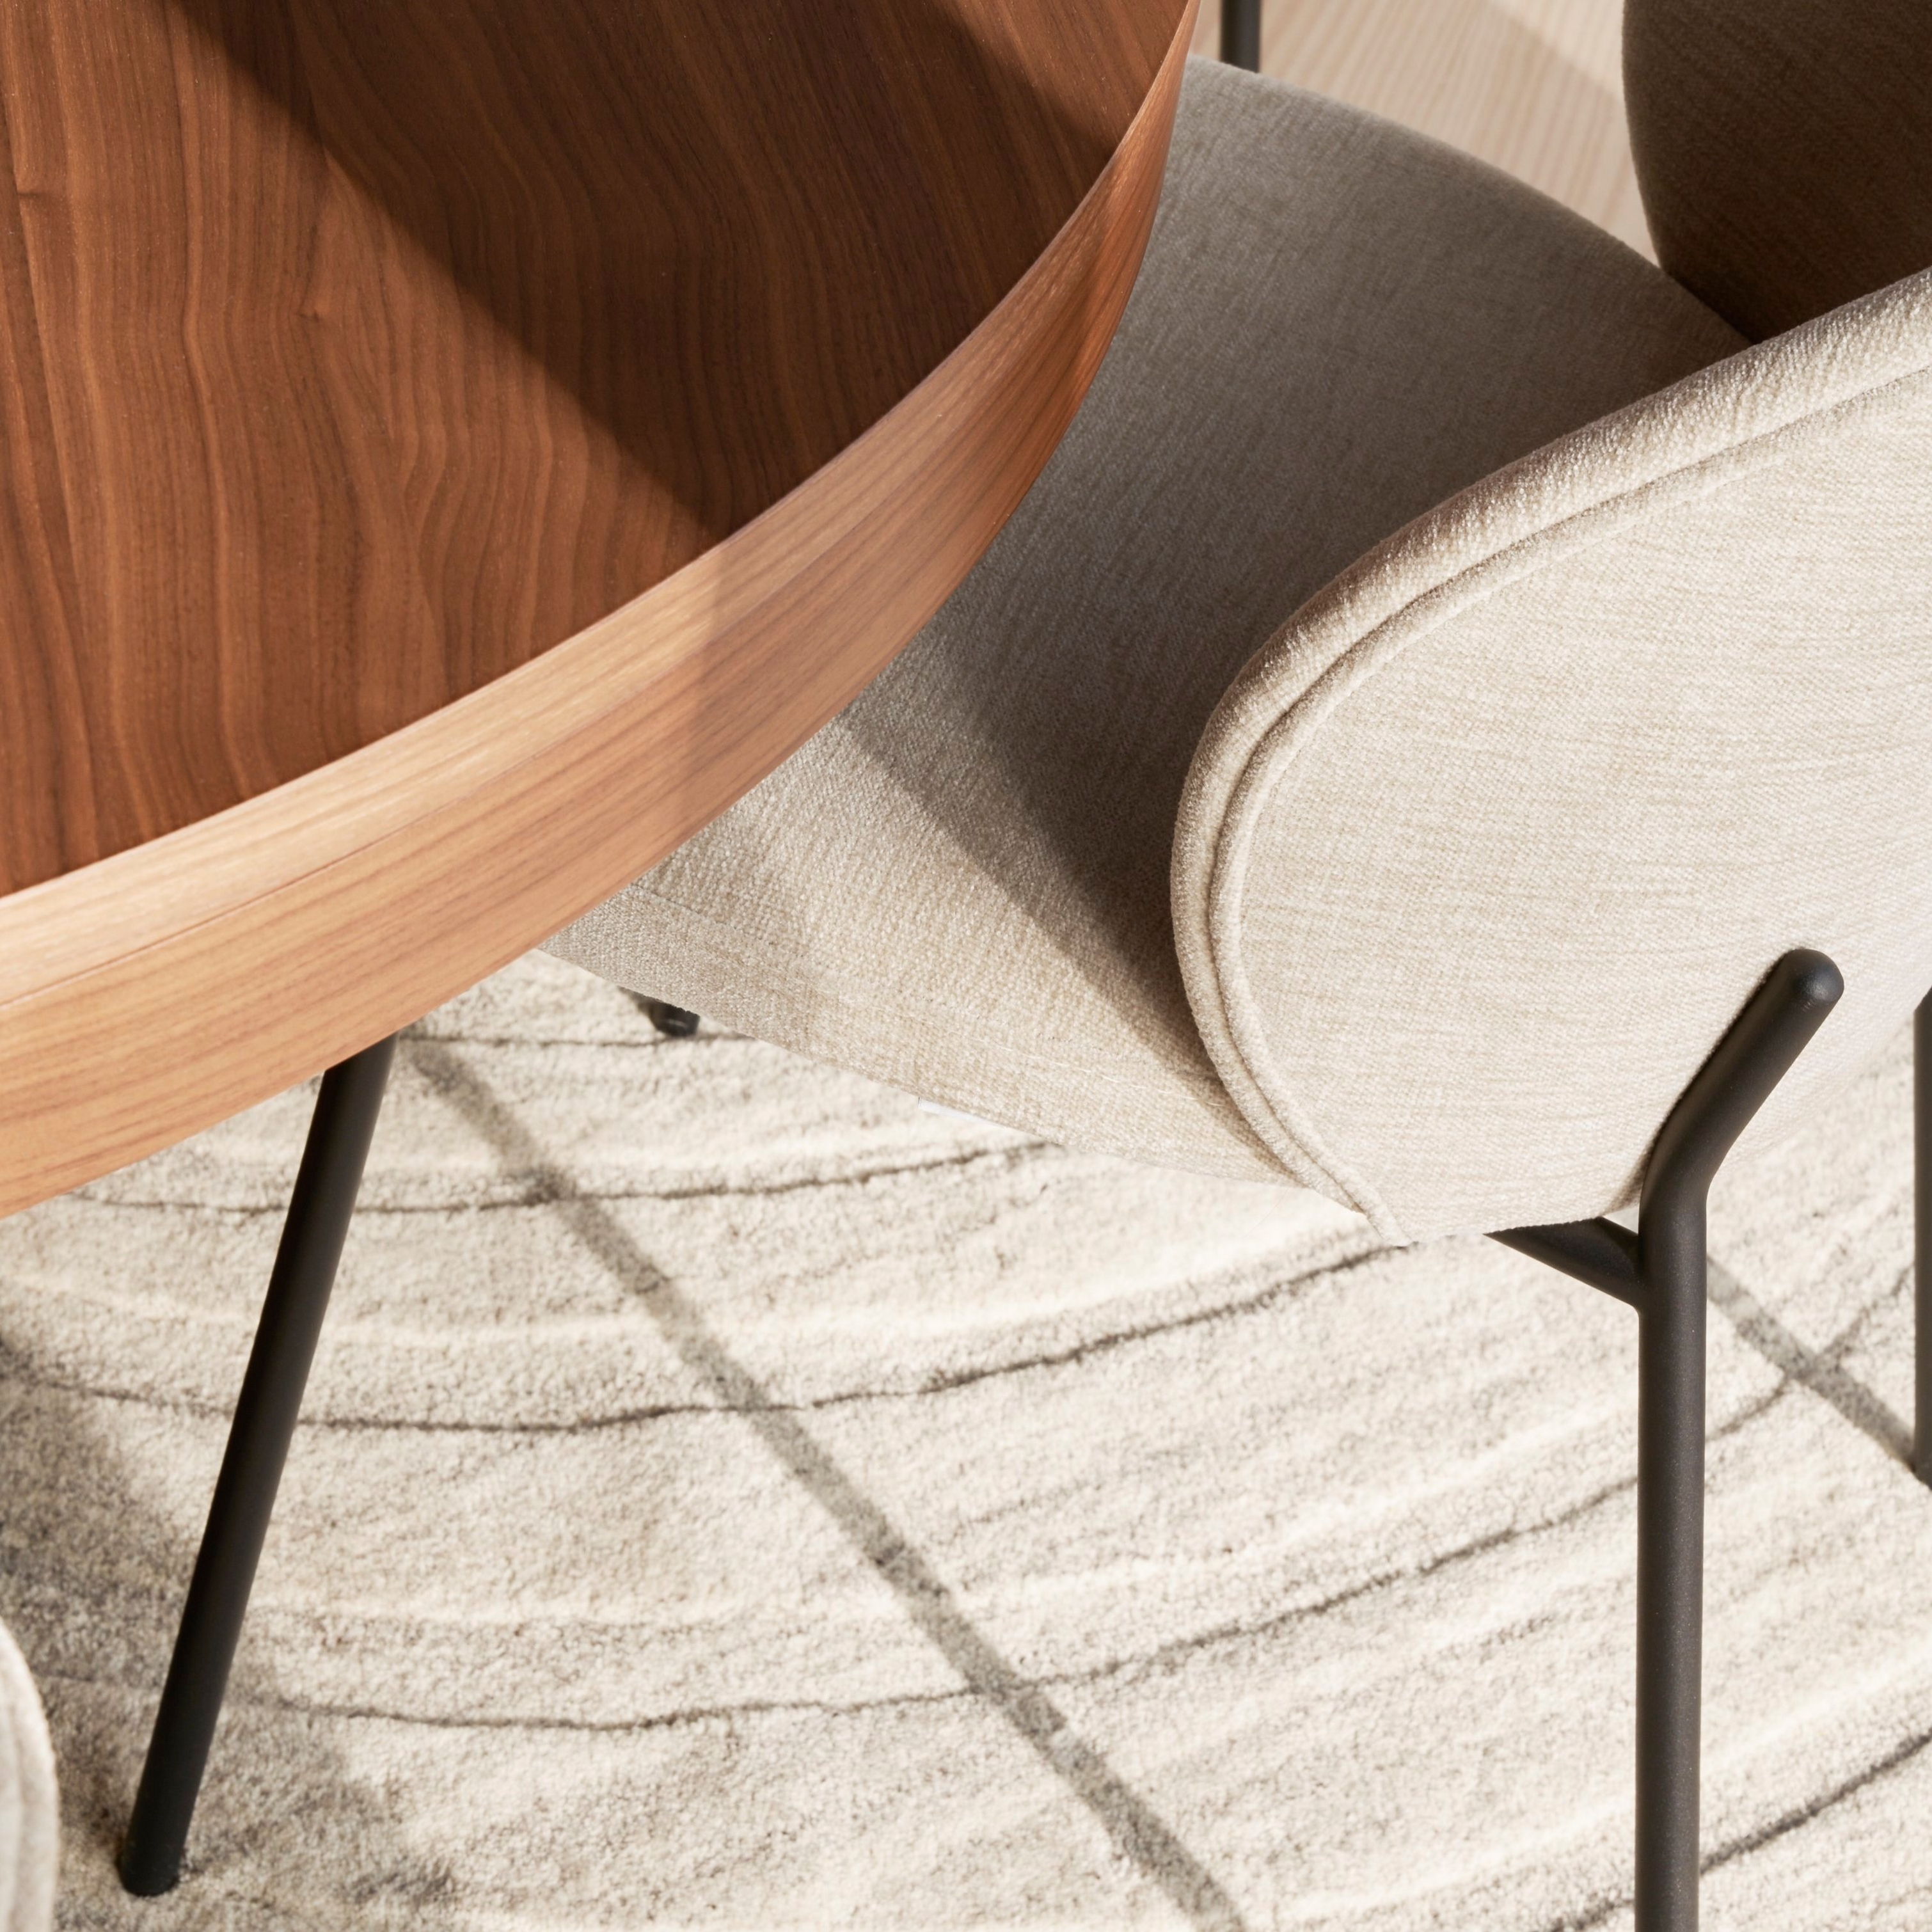 Nahaufnahme eines beigefarbenen gepolsterten Princeton Stuhls und eines runden Holztisches auf einem gemusterten Teppich.